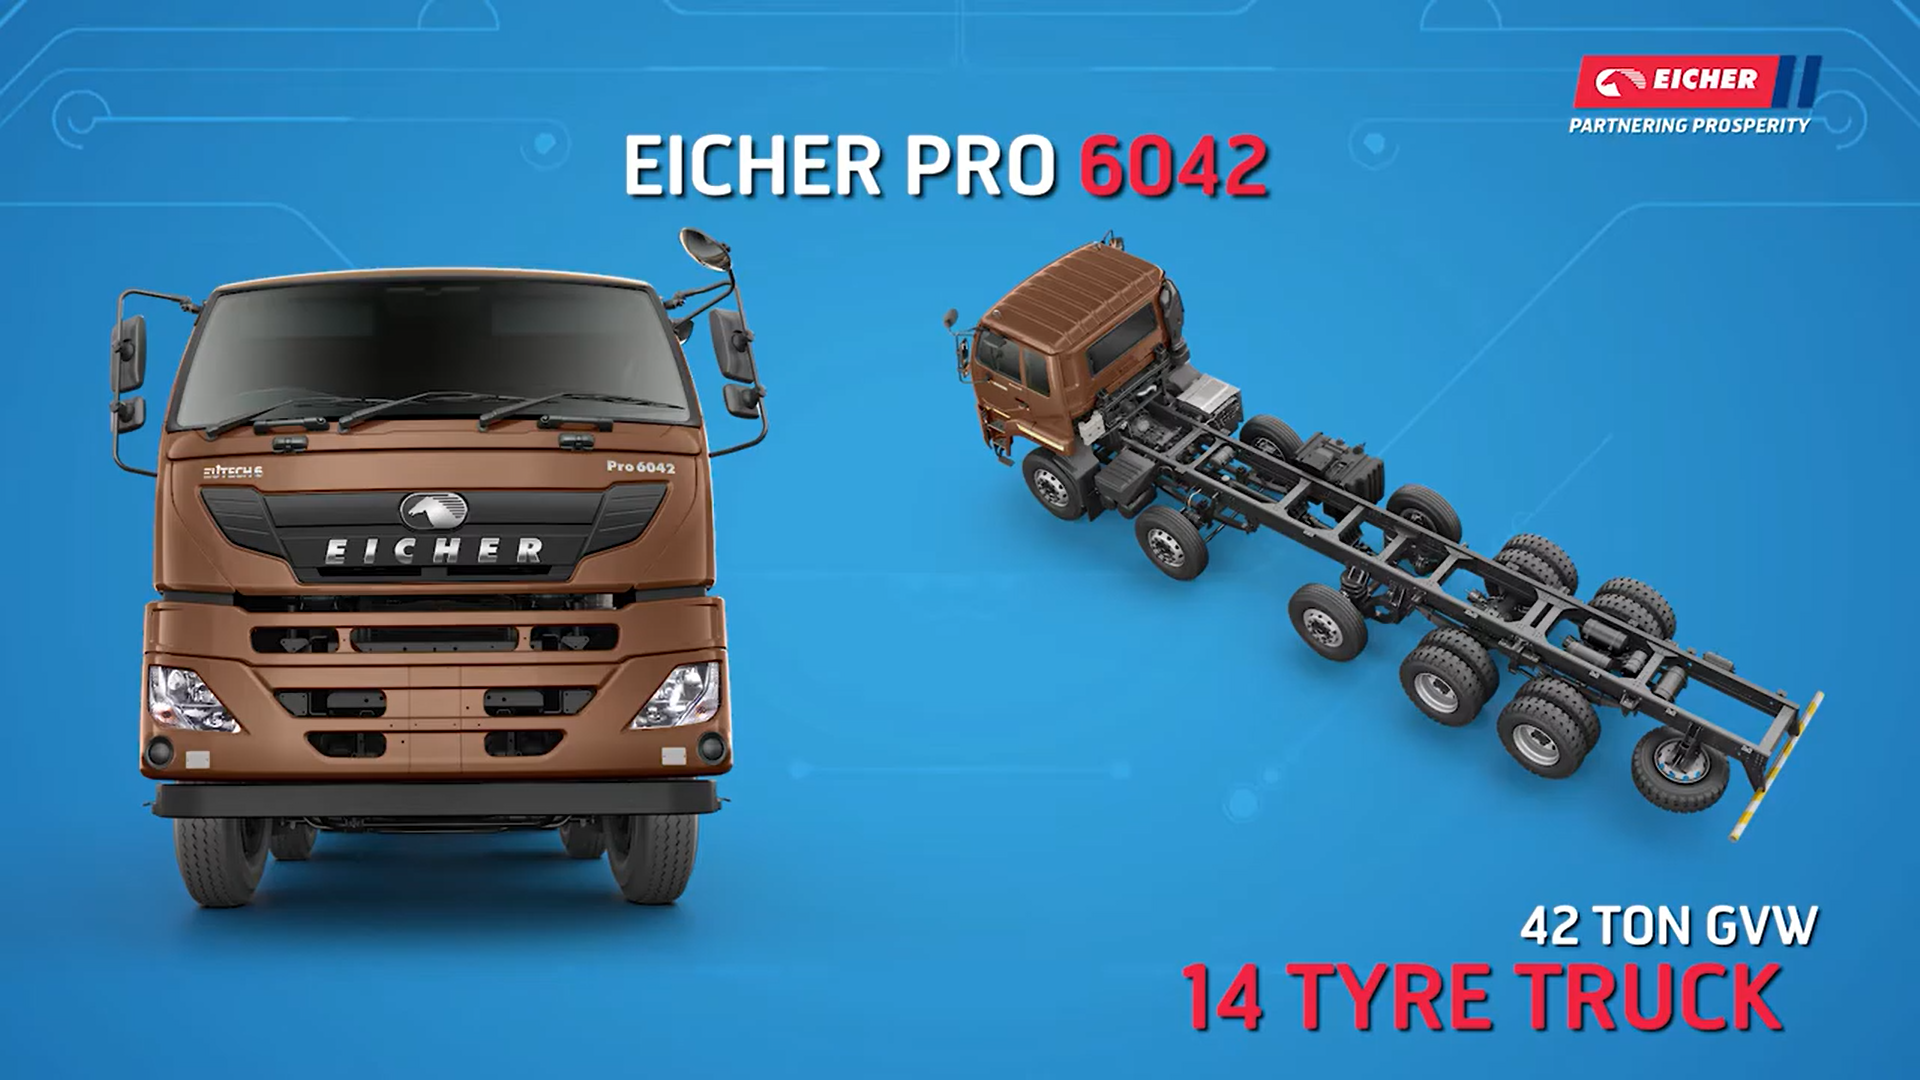 Know your BSVI Eicher Vehicle - Eicher Pro 6042 (Hindi)